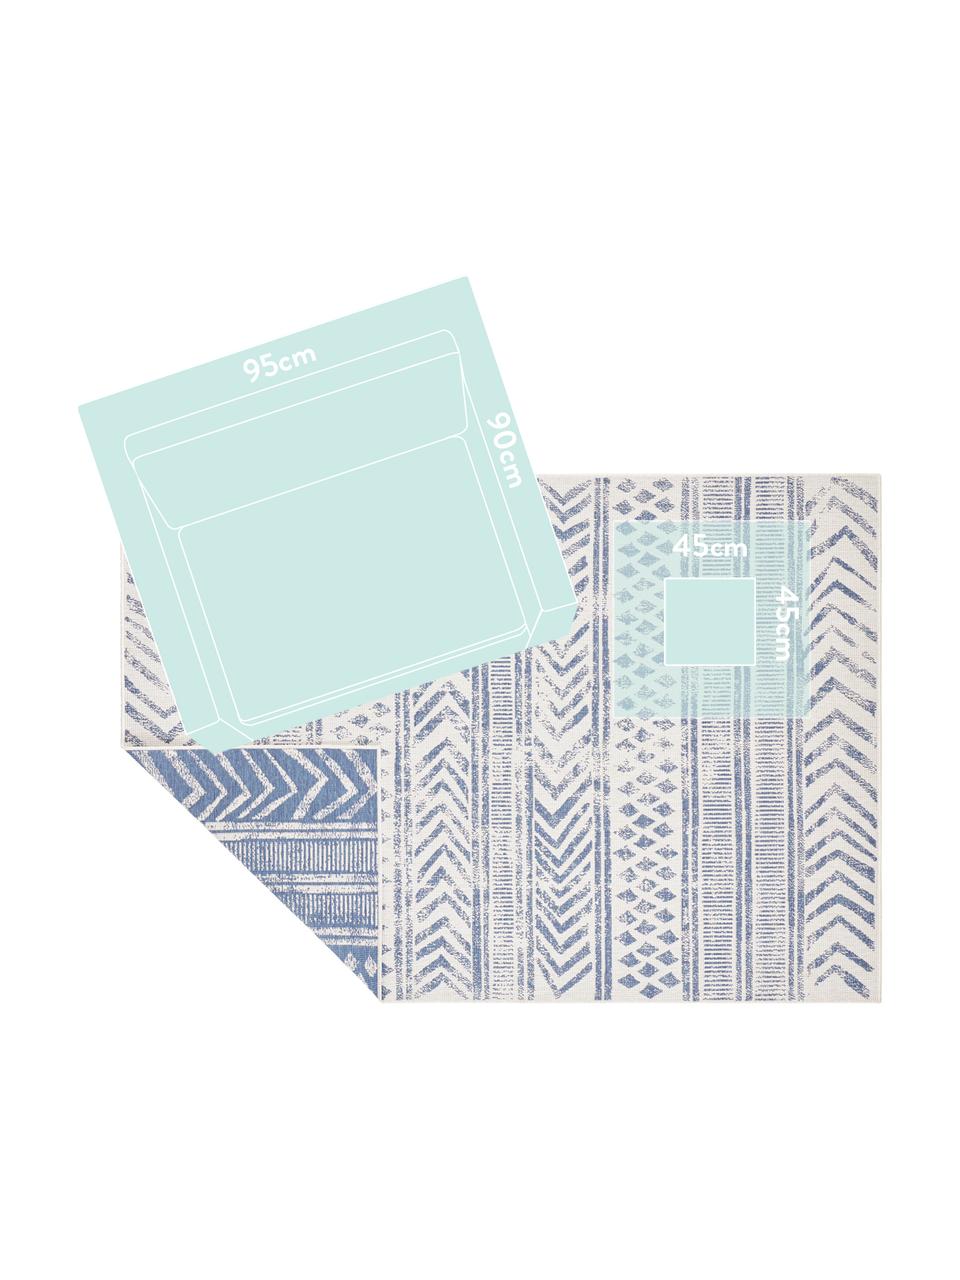 Dubbelzijdig in- en outdoor vloerkleed Biri met grafisch patroon, 100% polypropyleen, Blauw, crèmekleurig, B 200 x L 290 cm (maat L)